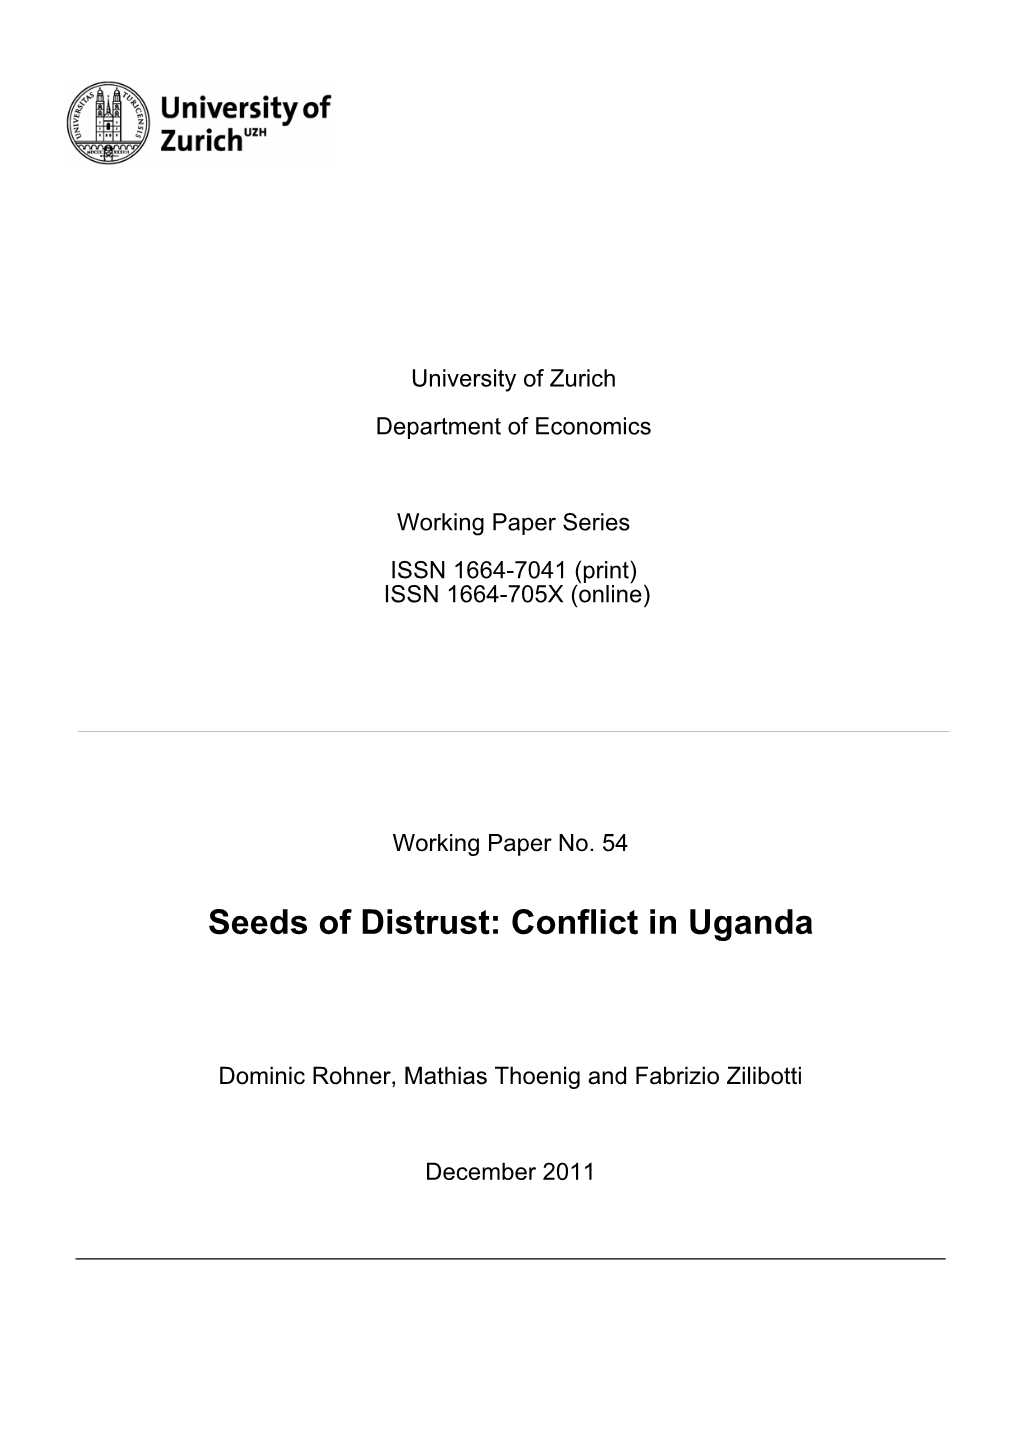 Seeds of Distrust: Conflict in Uganda